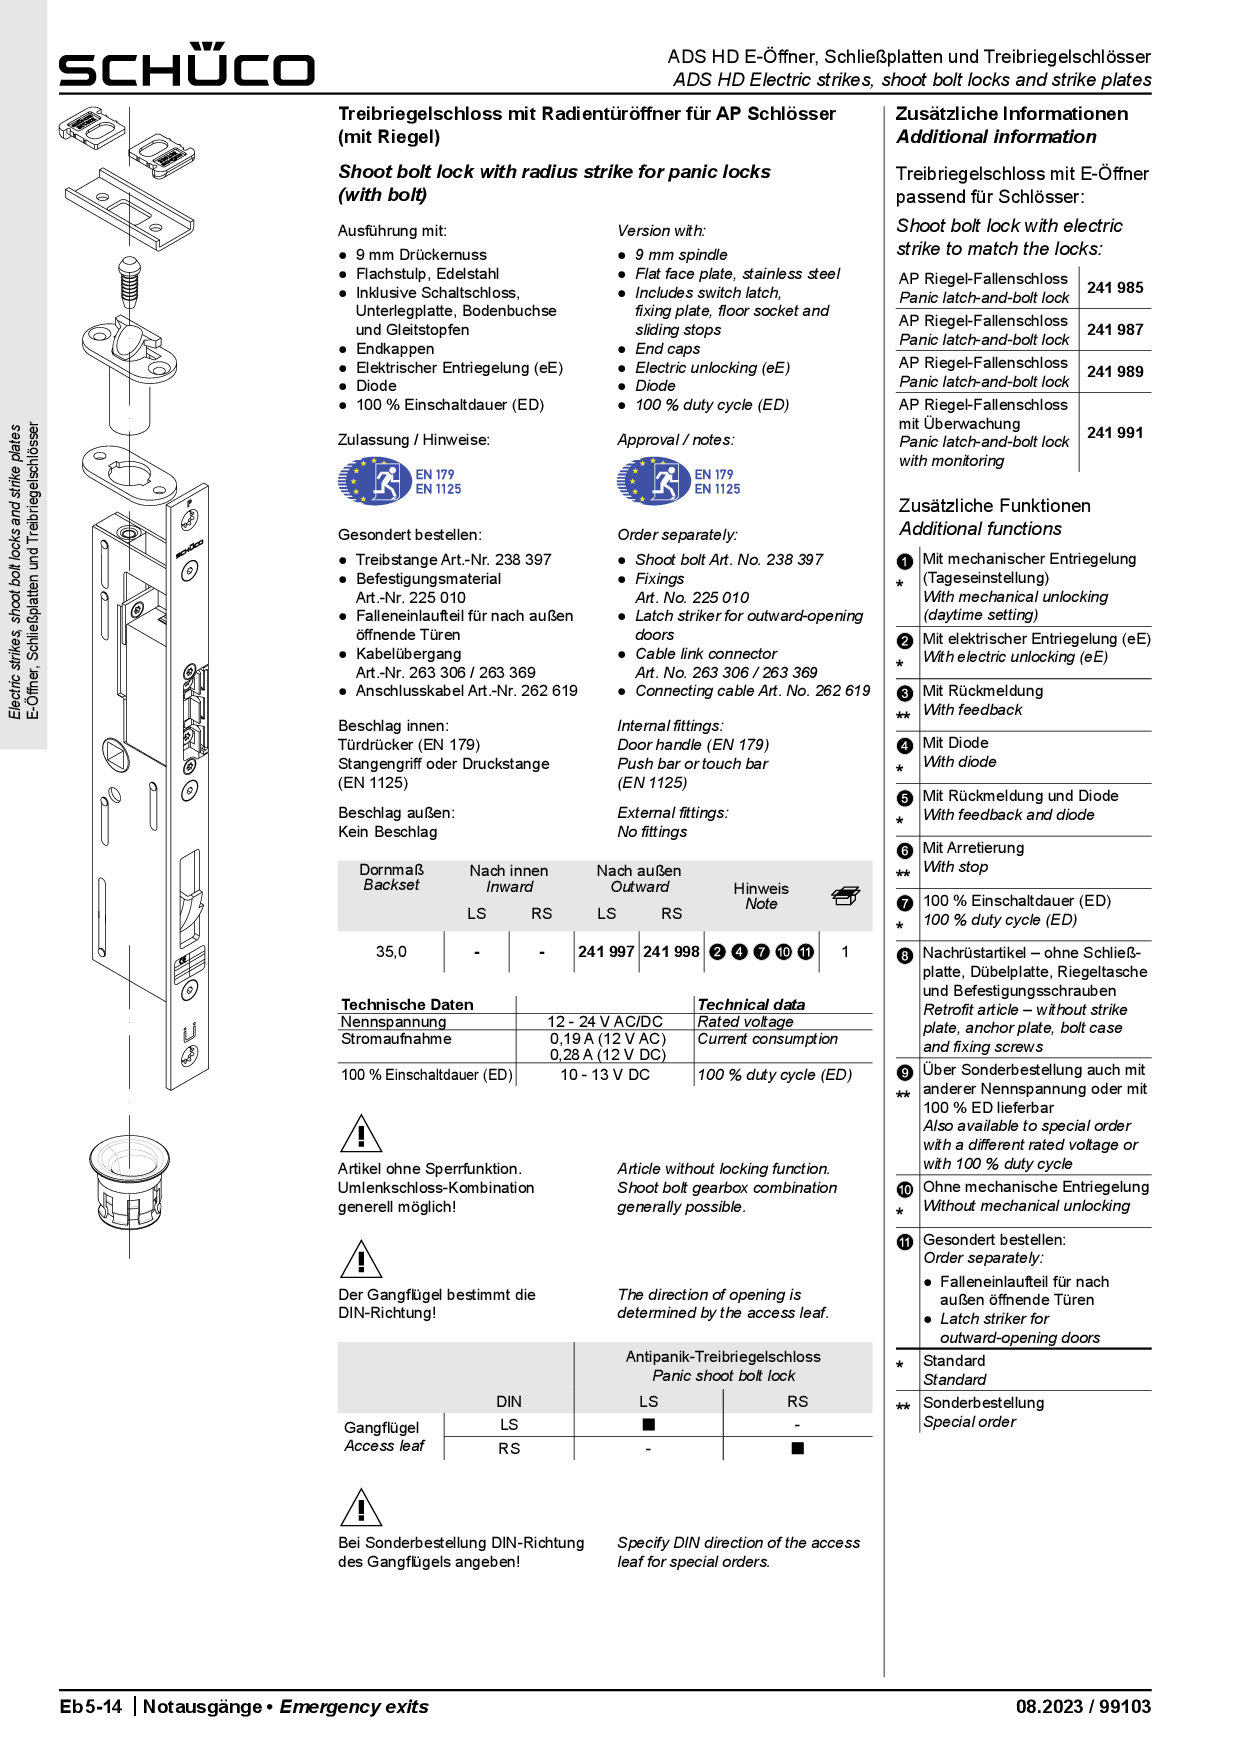 Schüco Treibriegelschloss mit Radientüröffner 241998 DIN RS für Antipanik-Schlösser (mit Riegel)